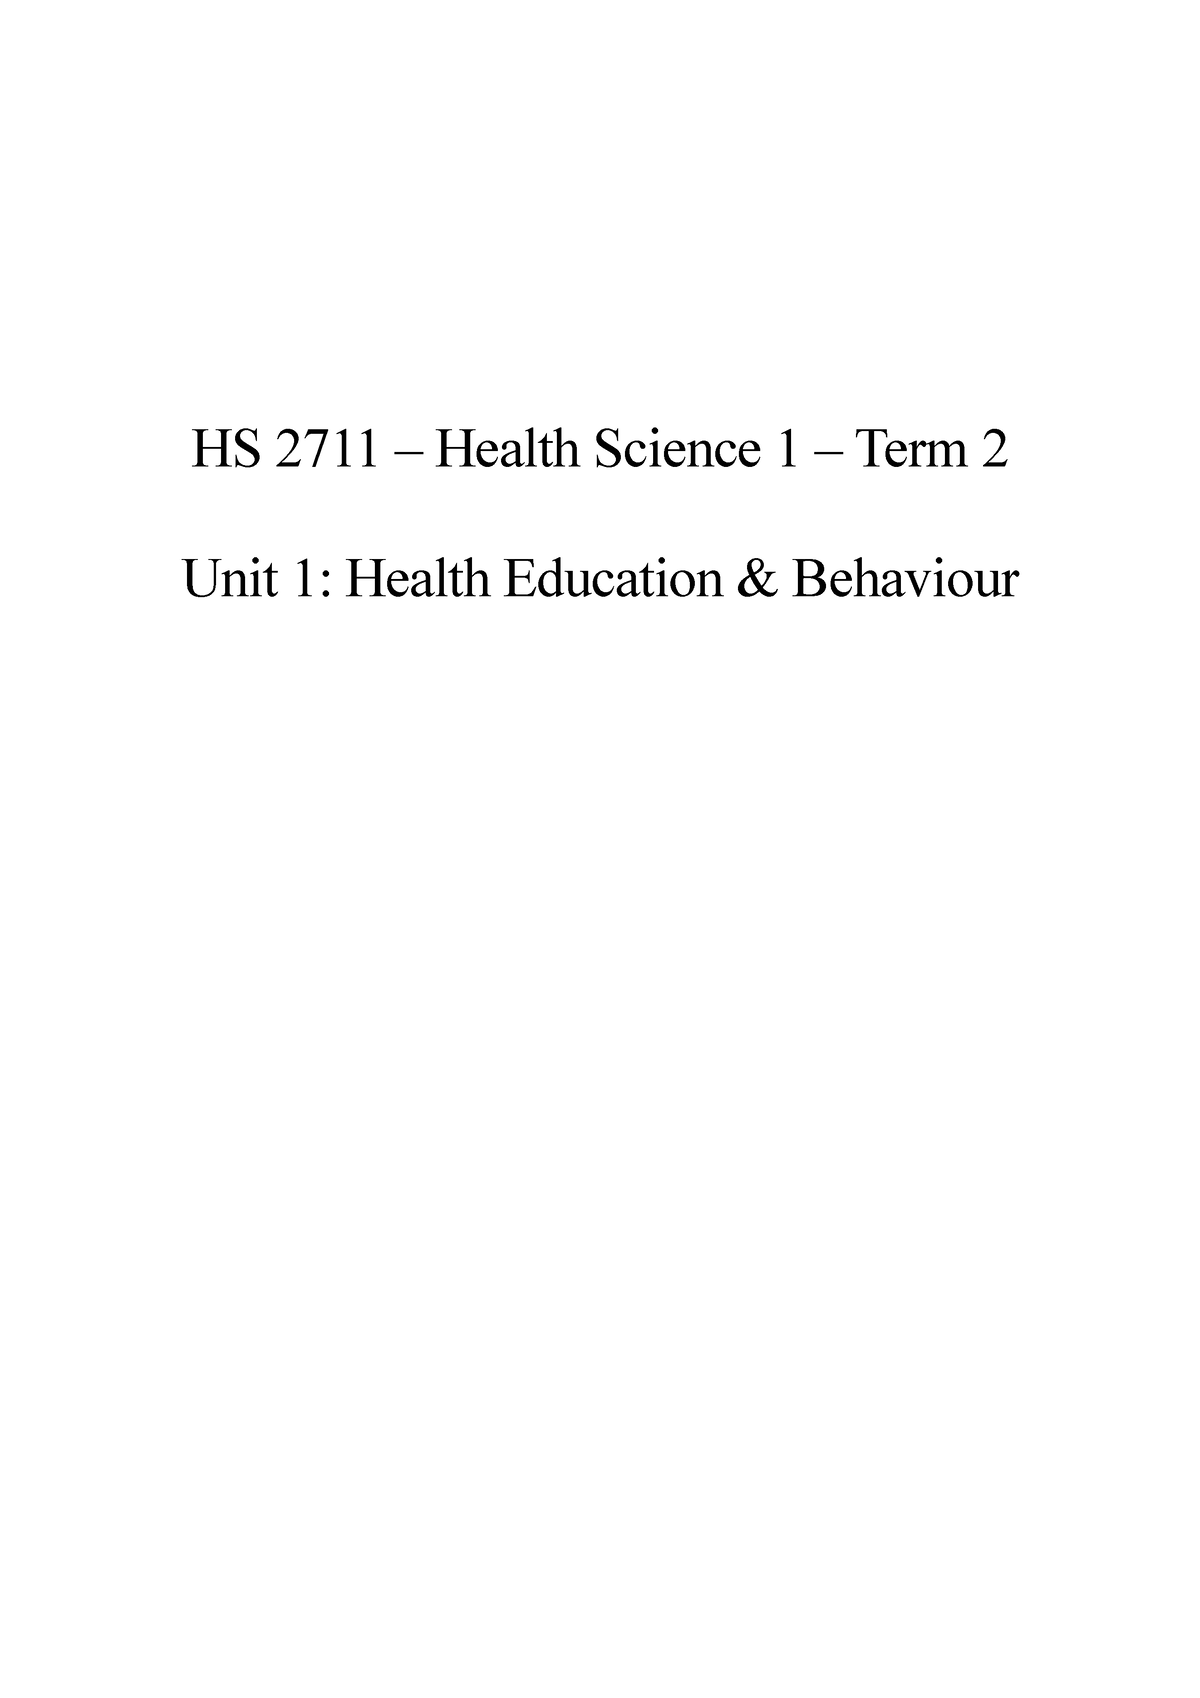 hs 2711 written assignment unit 1